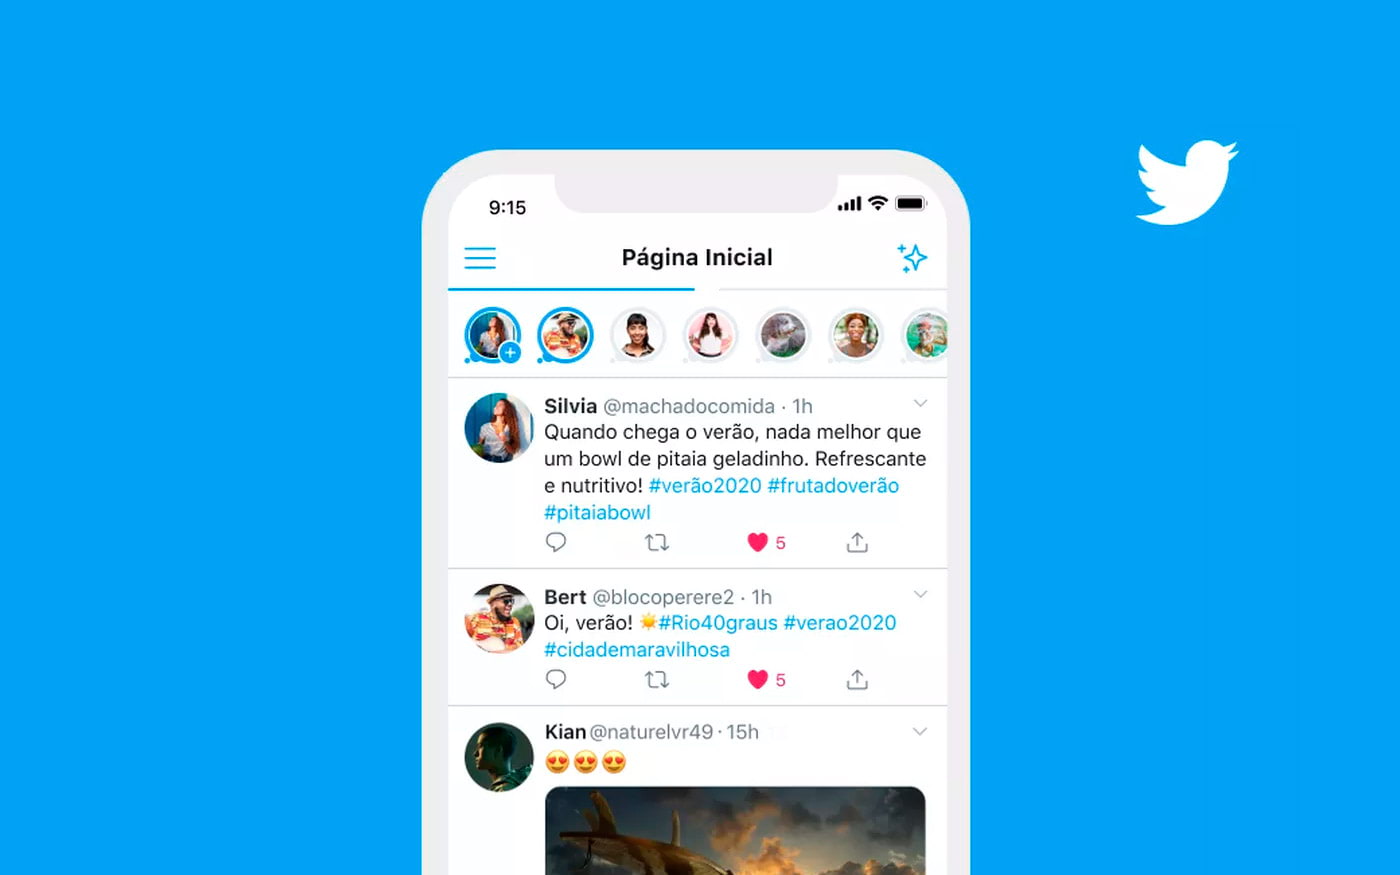 Twitter kuulutab oma loo "Brasiilias", vahendab Twitter Fleet